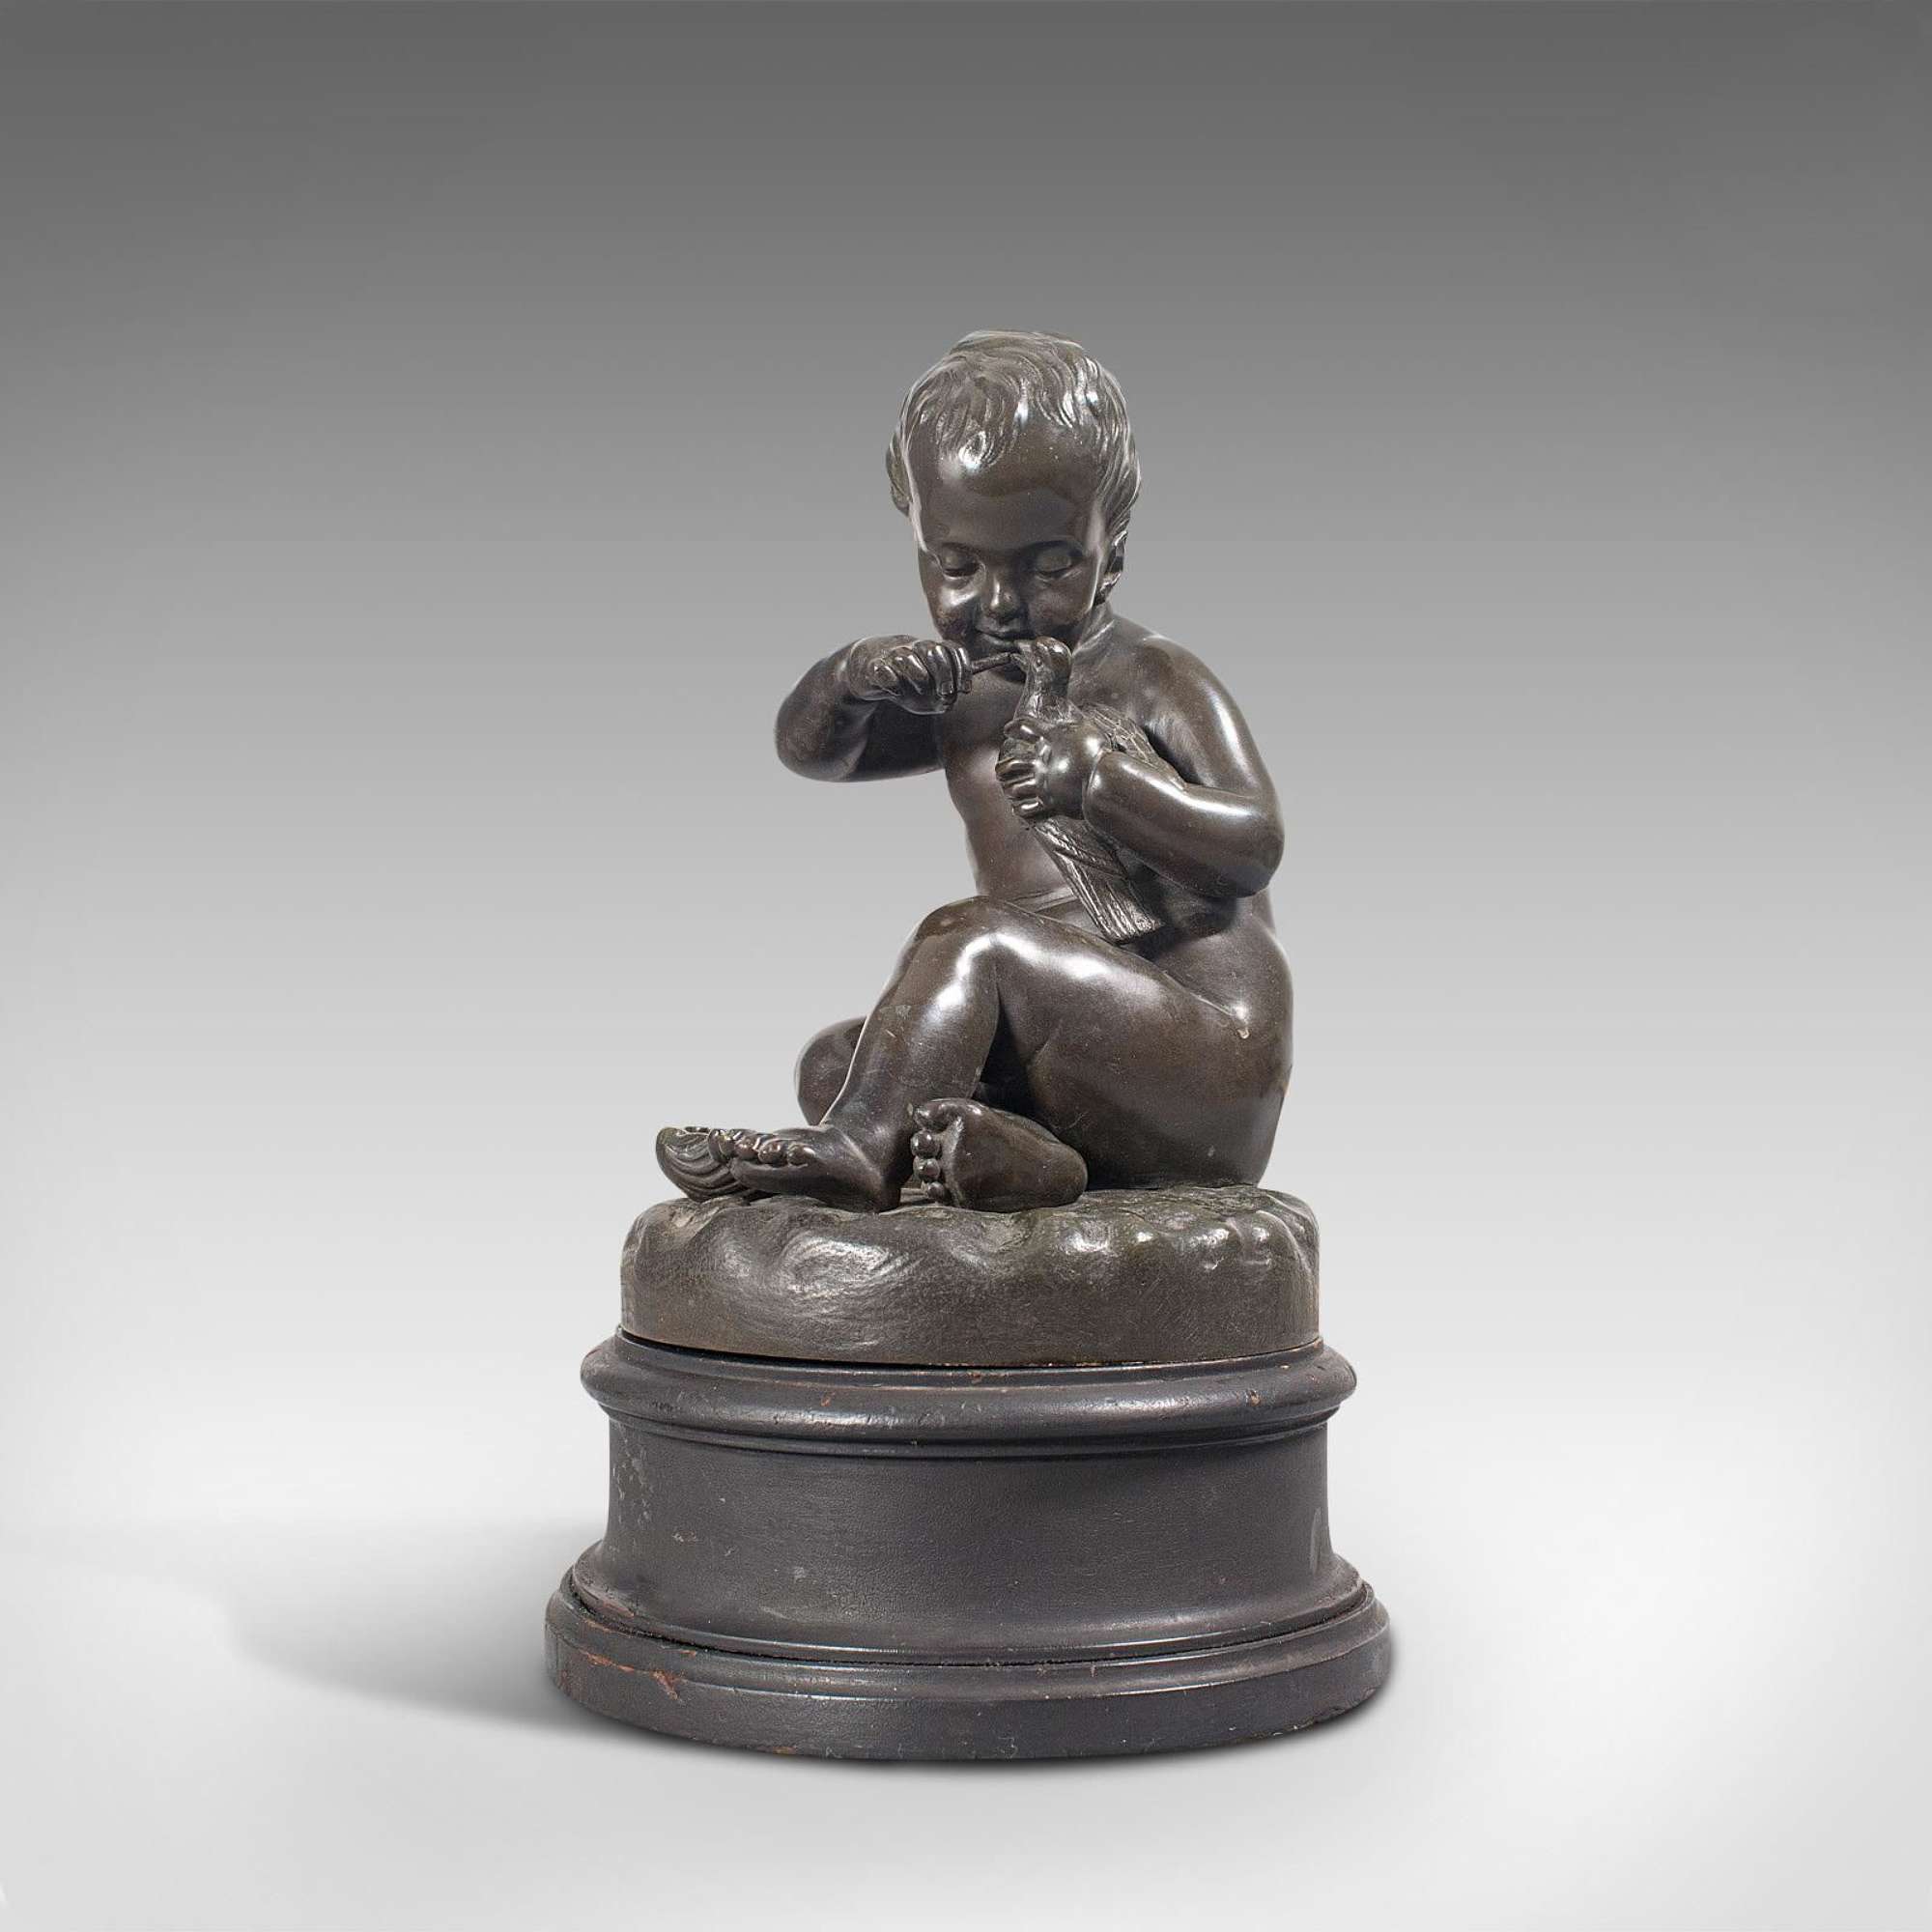 Antique Putto Statue, French, Bronze, Cherub Figure C 1900